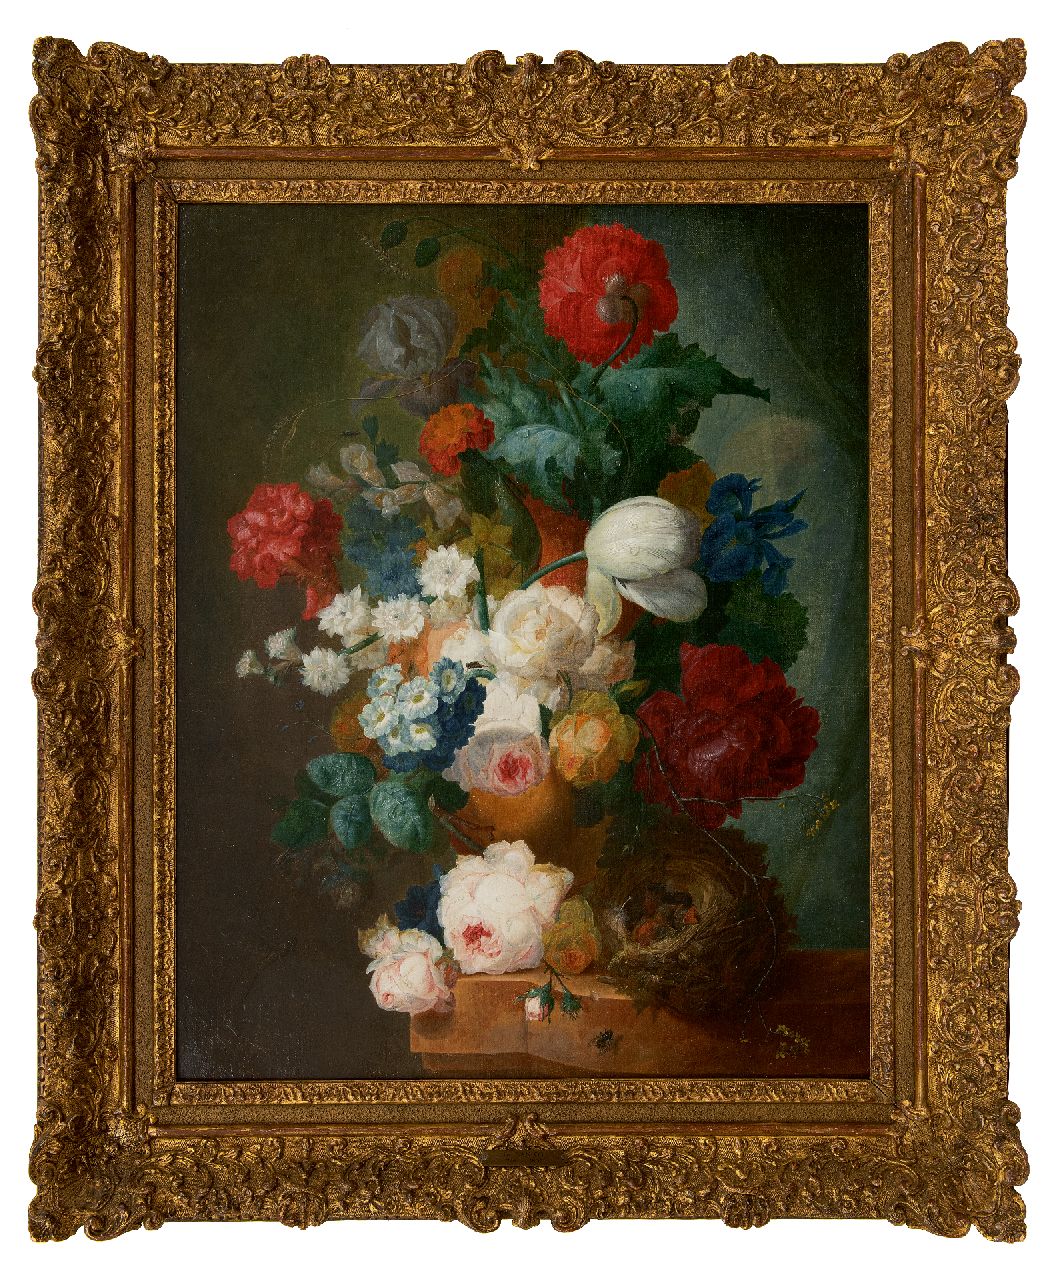 Os J. van | Jan van Os | Schilderijen te koop aangeboden | Stilleven met rozen, papavers en vogelnestje, olieverf op doek 66,3 x 55,0 cm, gesigneerd rechtsonder (draagt sleetse signatuur)